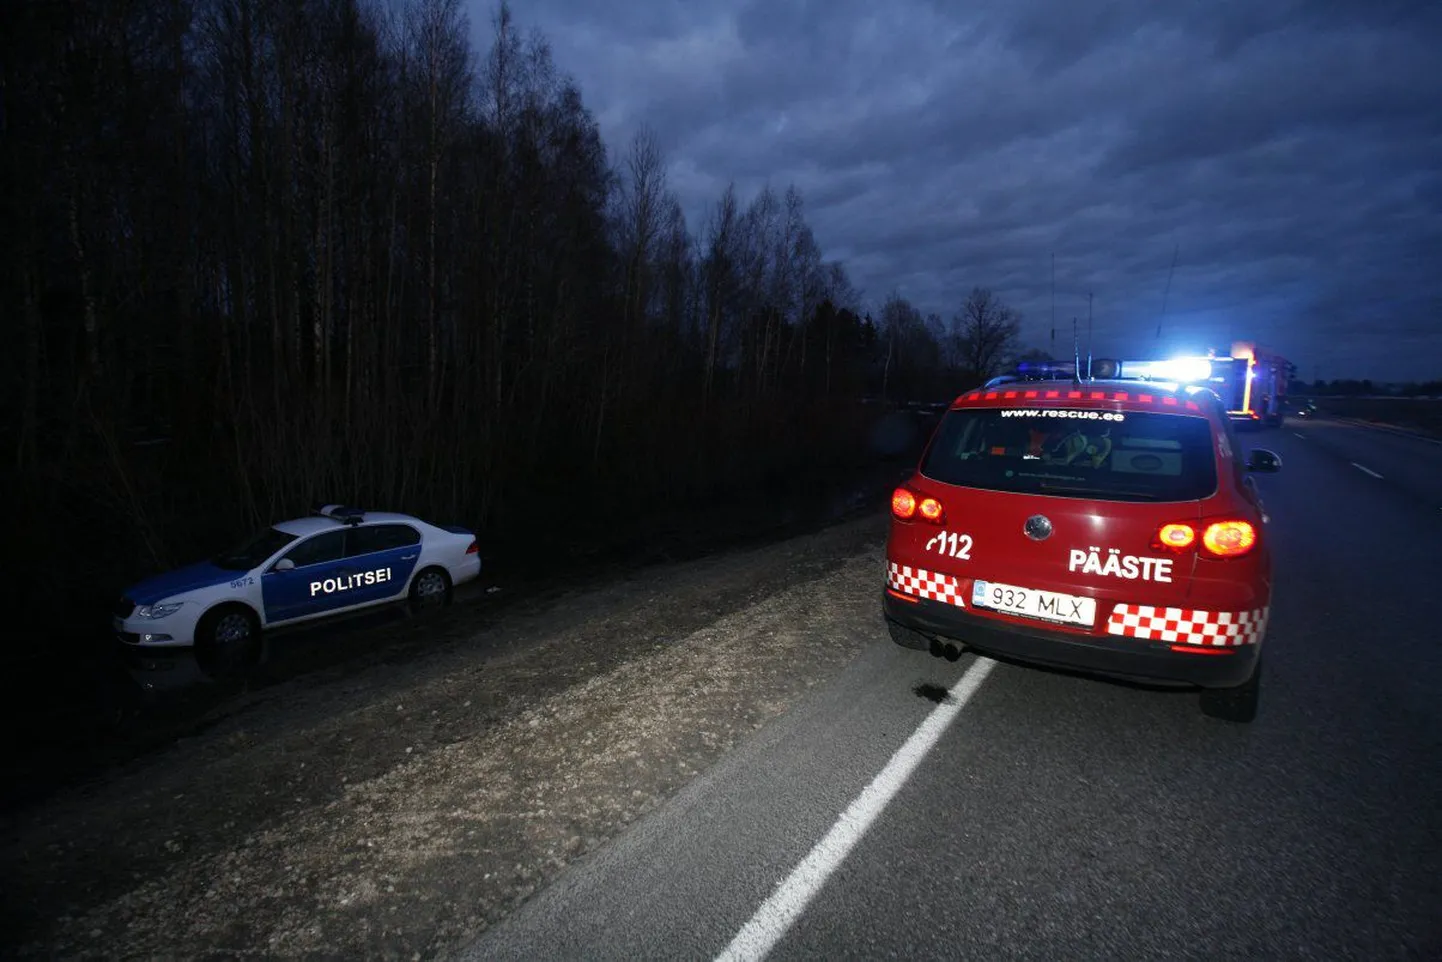 Järvamaal Tallinna-Tartu maanteel politsei eest põgenenud autojuht põrkas möödasõidul kokku teise autoga ning hukkus. Politseiauto sõitis teise kokkupõrke vältimiseks kraavi.